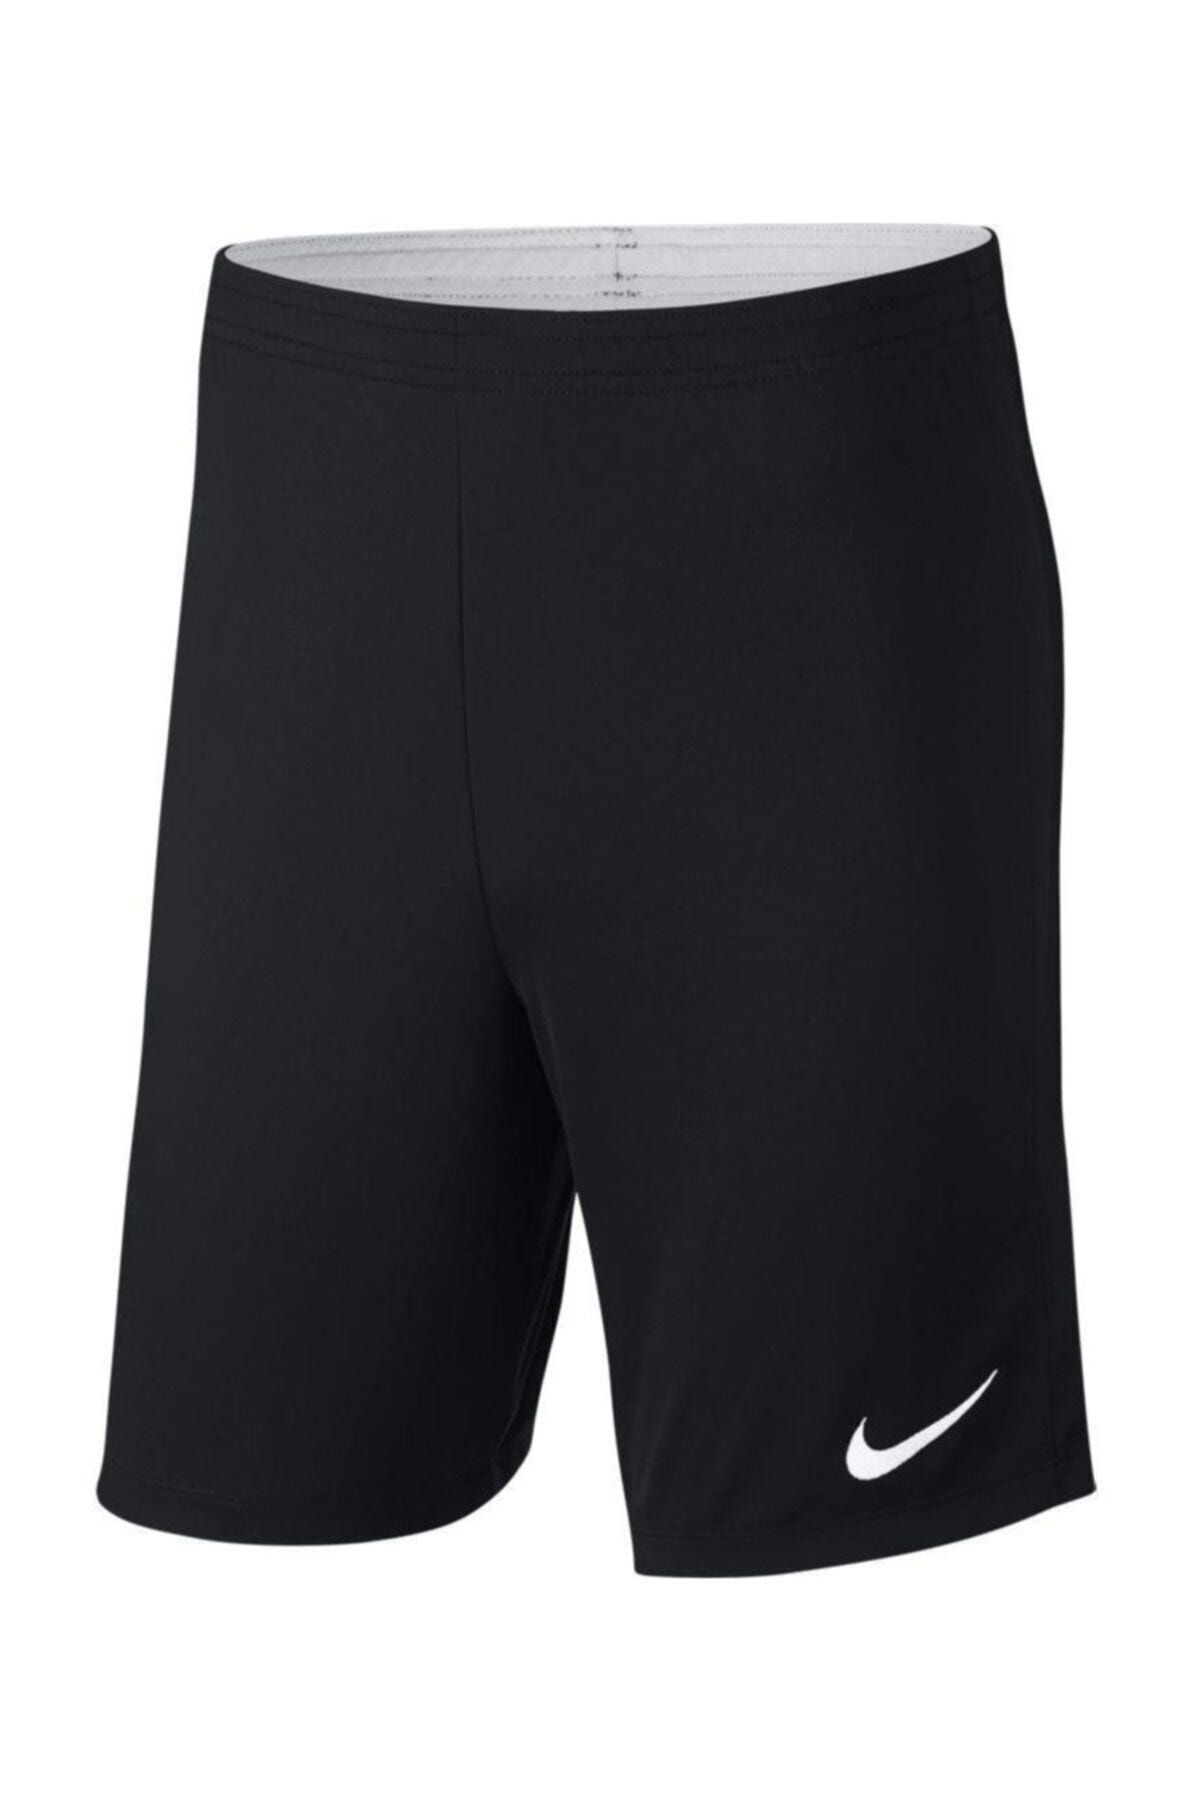 Nike Erkek Şort/bermuda - Dry Academy Erkek Futbol Şortu - 893691-010